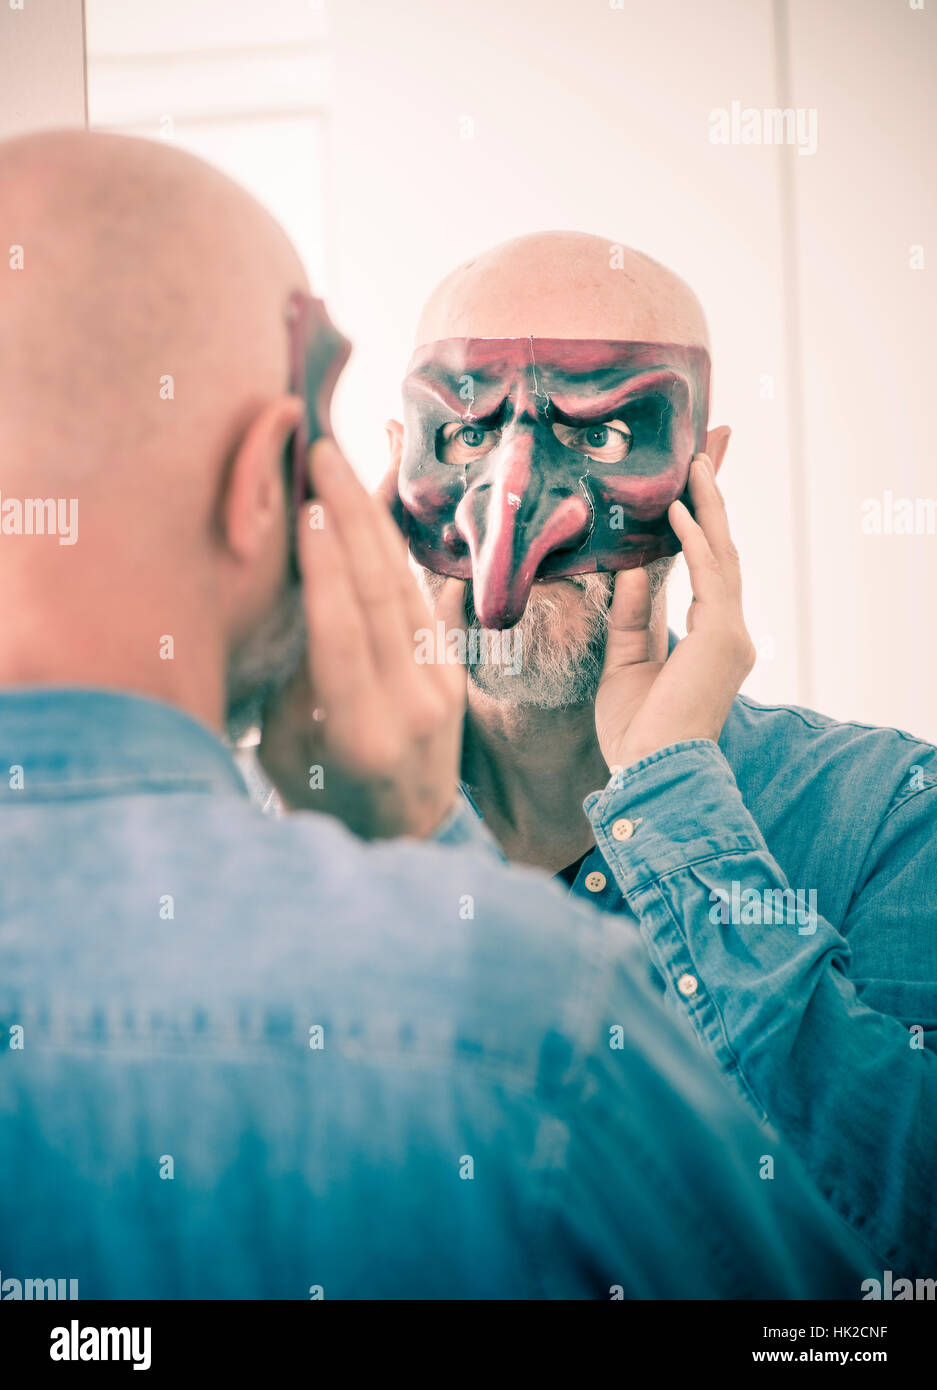 Alte Mann Abdeckung Gesicht mit Karnevalsmaske. Selbst betrachten im Spiegel. Konzept der Überalterung, Selbstbild als eine ältere Person und Identität verbergen. Stockfoto